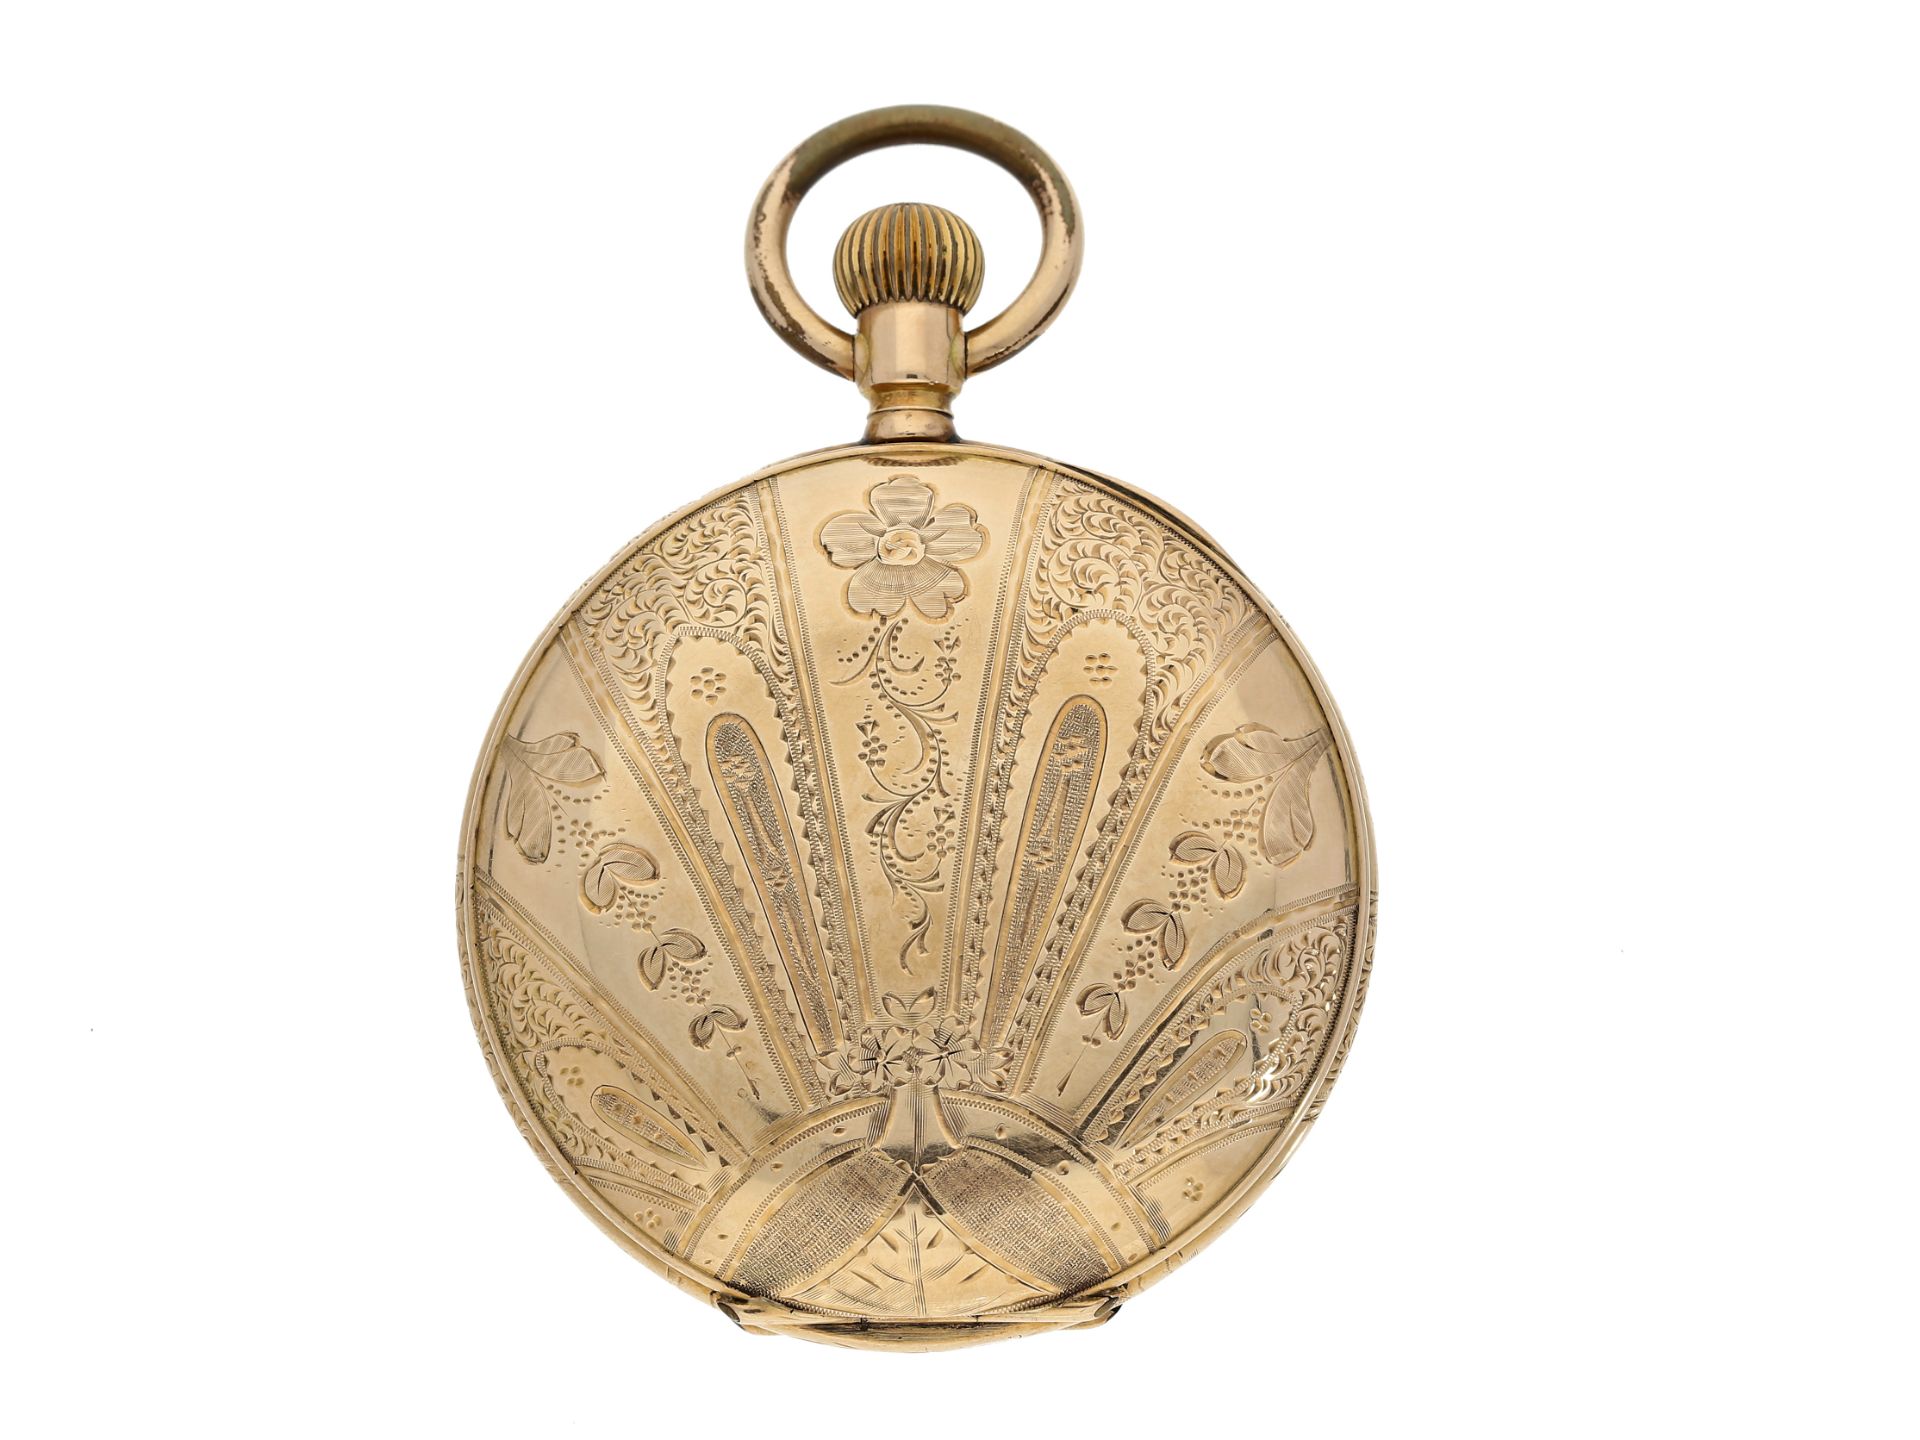 Taschenuhr: goldene Savonnette, um 1910, vermutlich Meisterstück, Platine signiert W. Stüdemann - Bild 2 aus 5